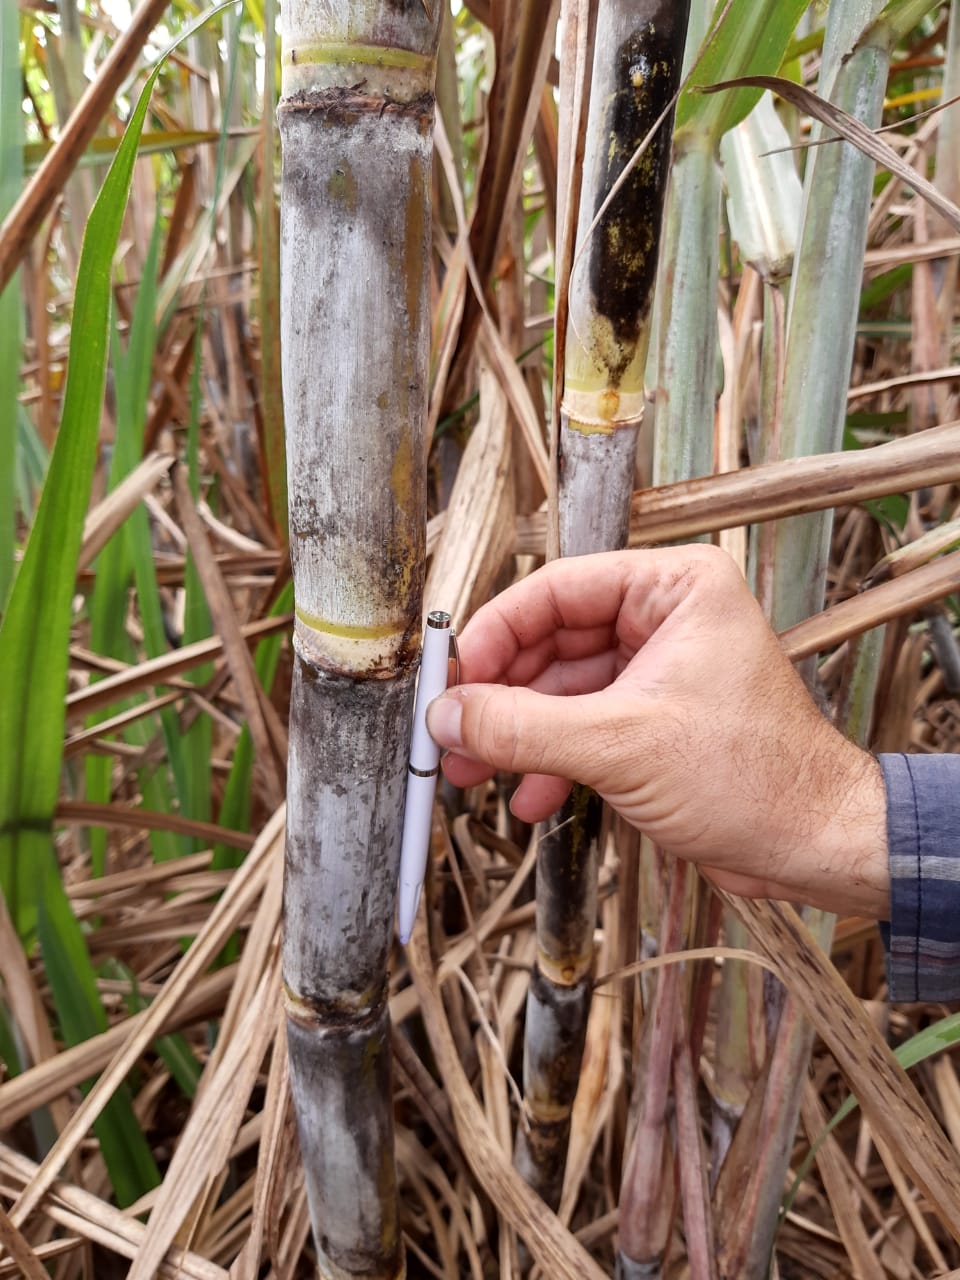 AFCP e Coaf buscam variedades de cana resistentes à seca e à broca